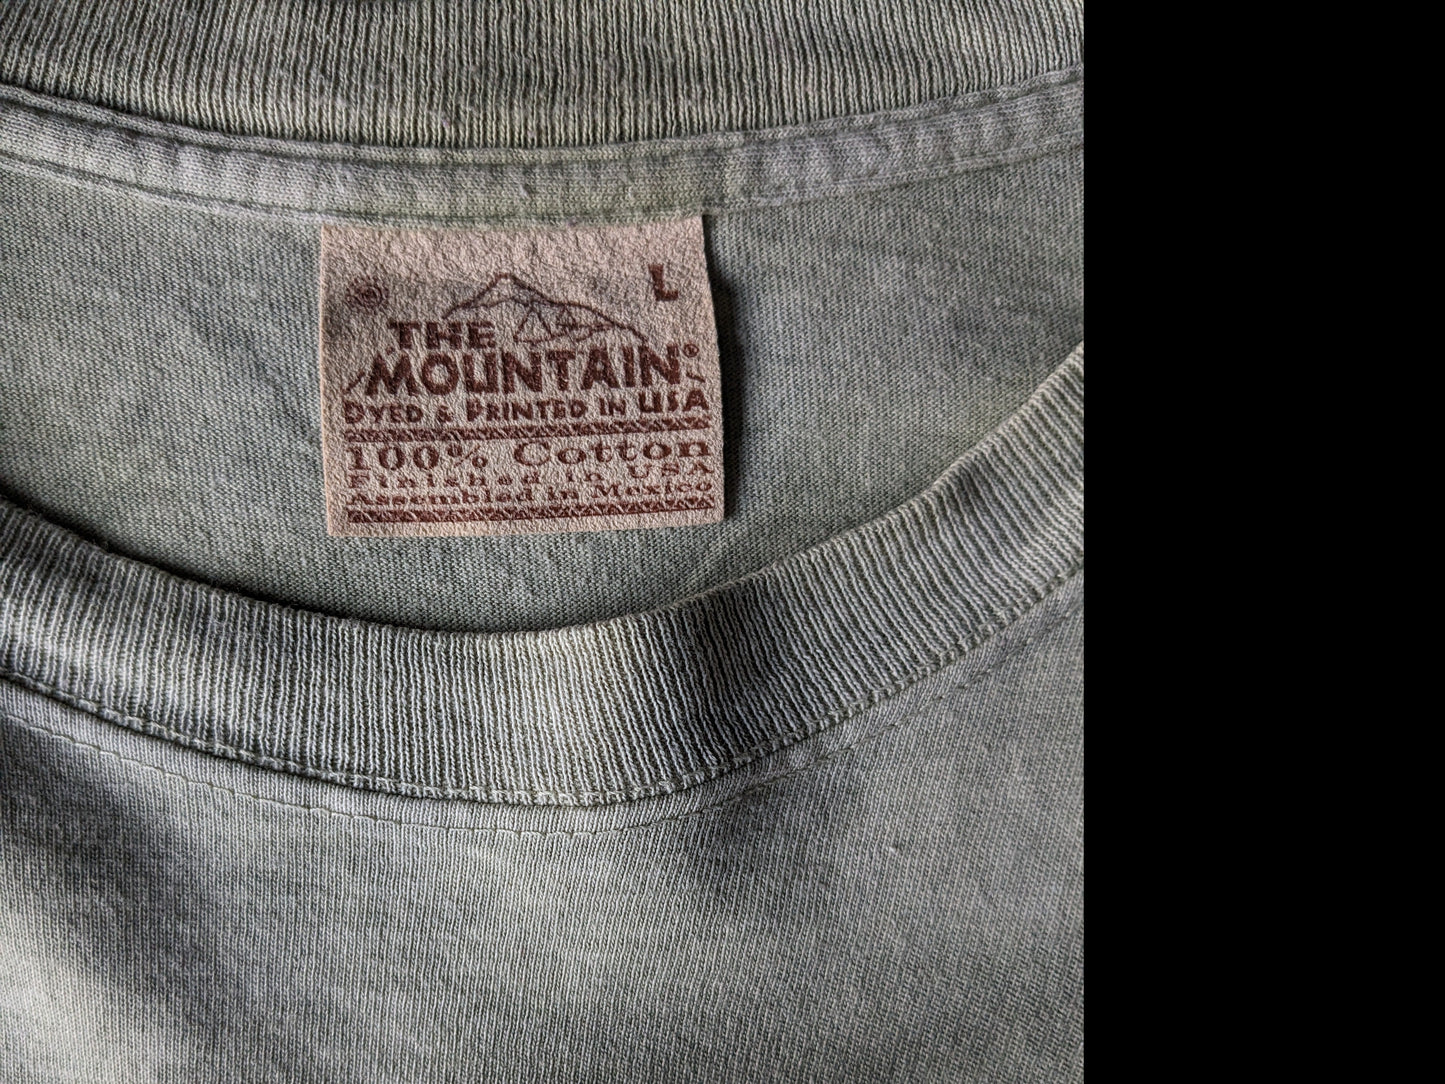 The Mountain shirt. Groen gemêleerd met Wolf en Vrouw opdruk. Maat L / XL.